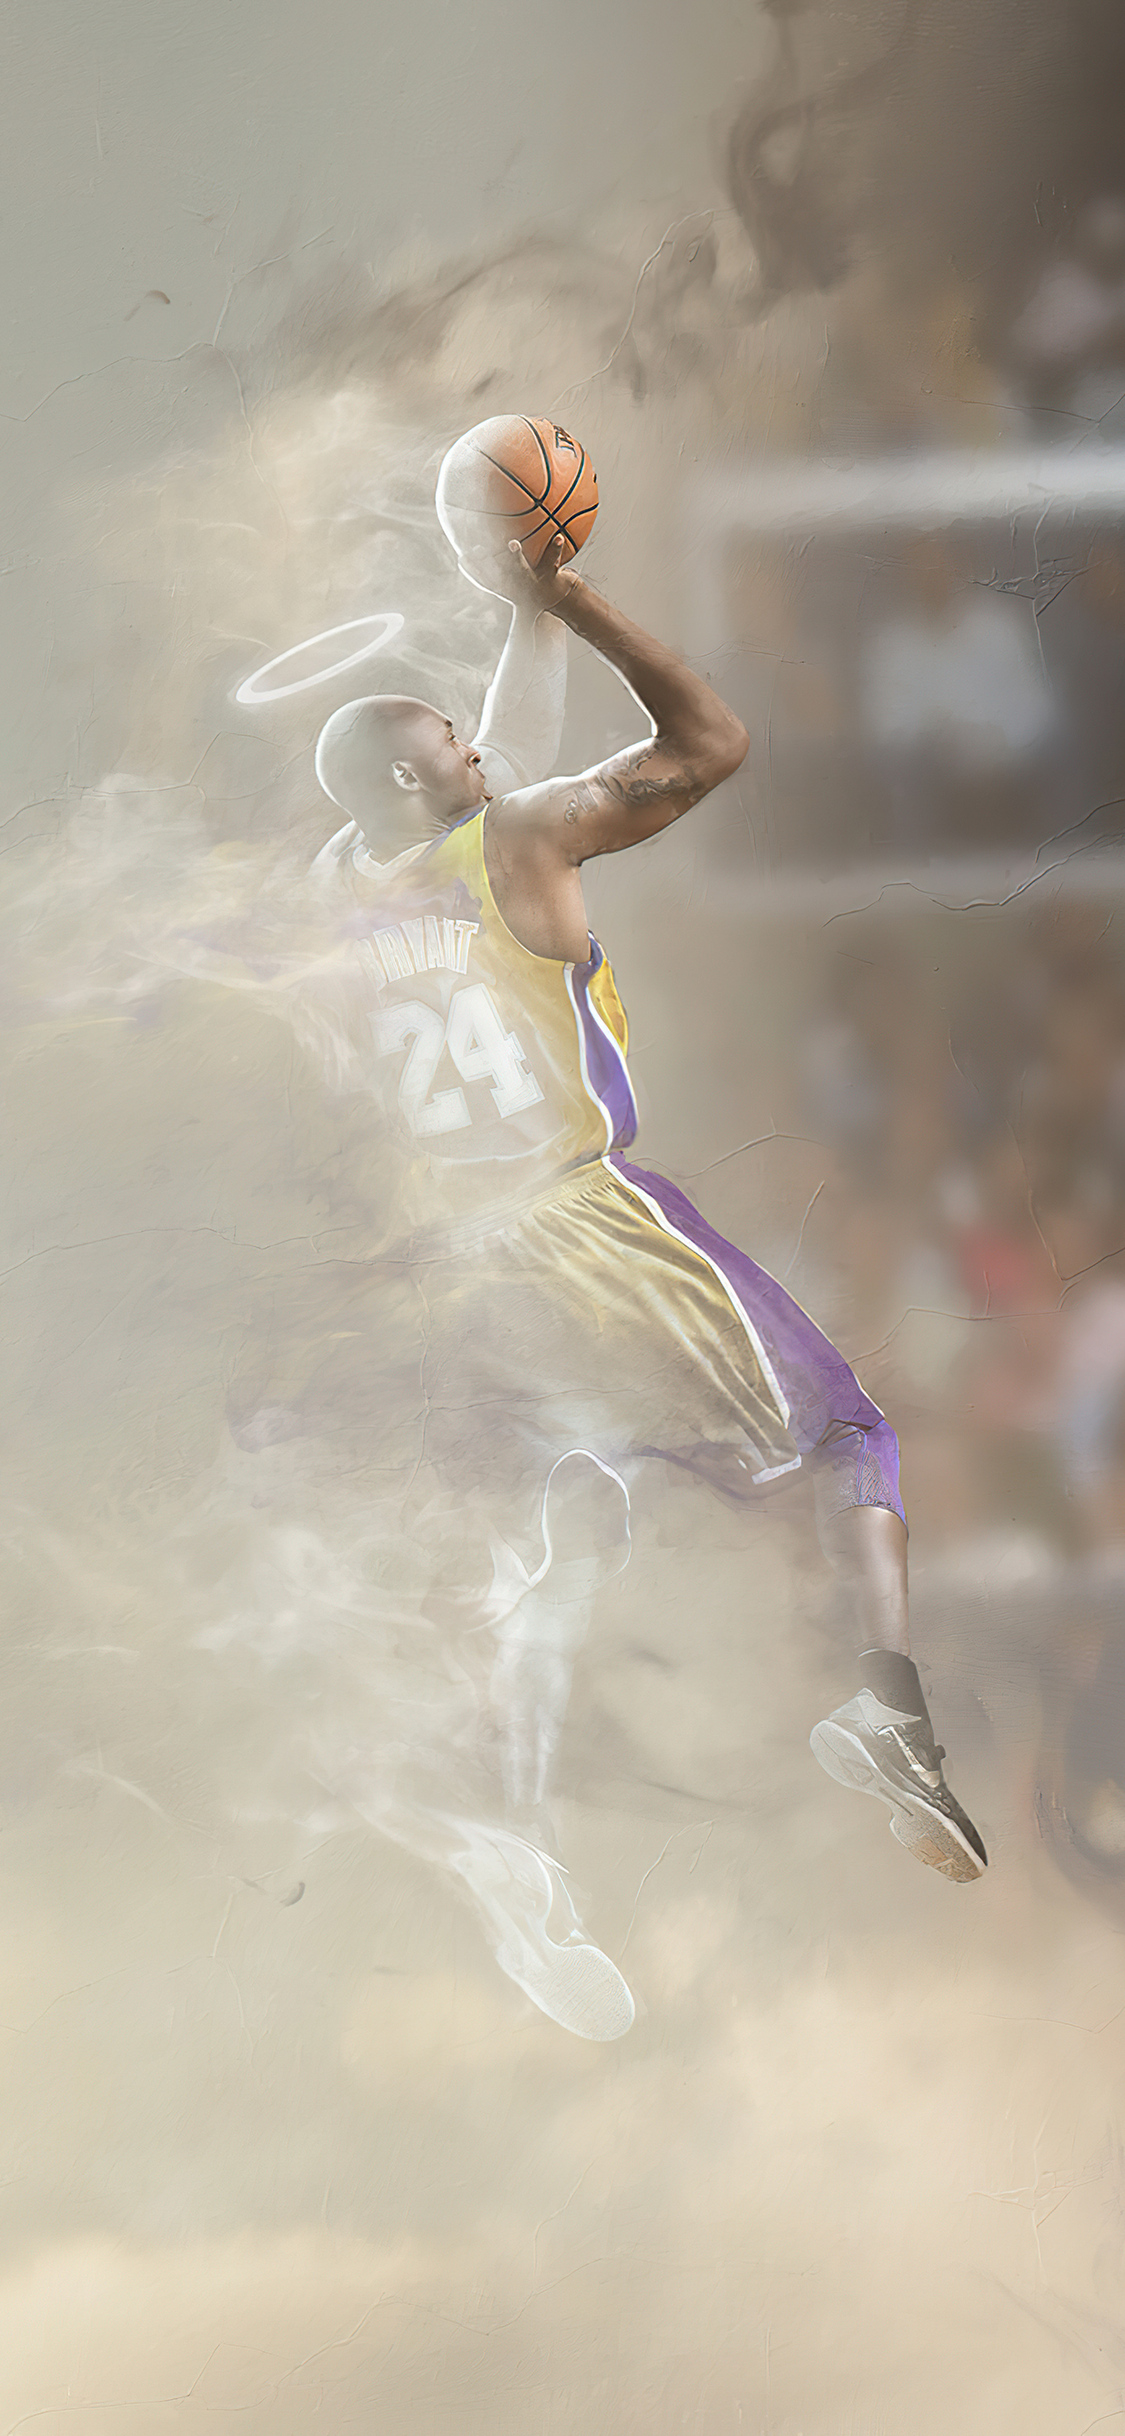 Các fan của Kobe Bryant hãy cùng tải những bức ảnh fan art mang tầm vóc thiên tài bóng rổ này về chiếc iPhone của bạn ngay bây giờ. Chắc chắn các tác phẩm nghệ thuật này sẽ làm bạn cảm thấy vô cùng thỏa mãn và đưa bạn đến nói không với những bức hình nền tạo nên bởi những người nào đó không biết gì về bóng rổ. 